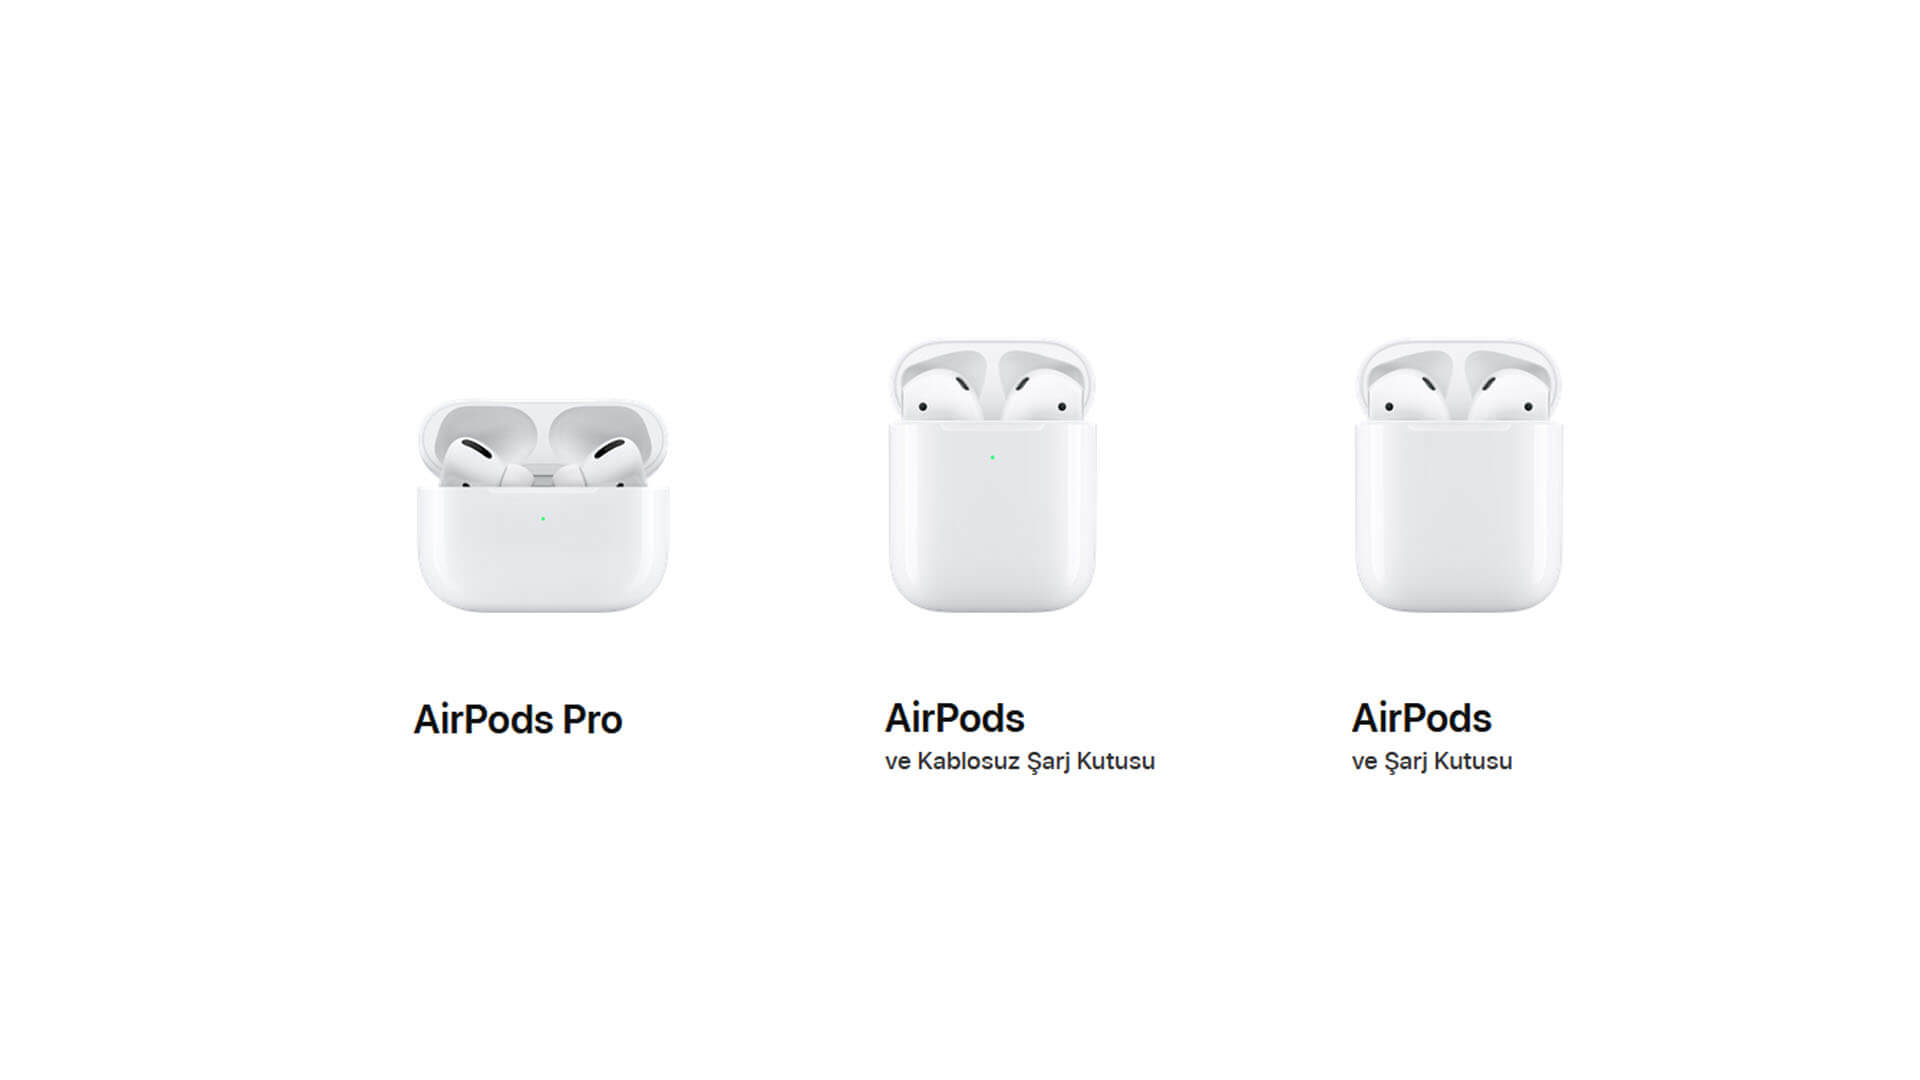 Apple’dan Yenilenmiş Giriş Seviyesi AirPods ve Daha Ufak Boyutlu AirPods Pro Yolda